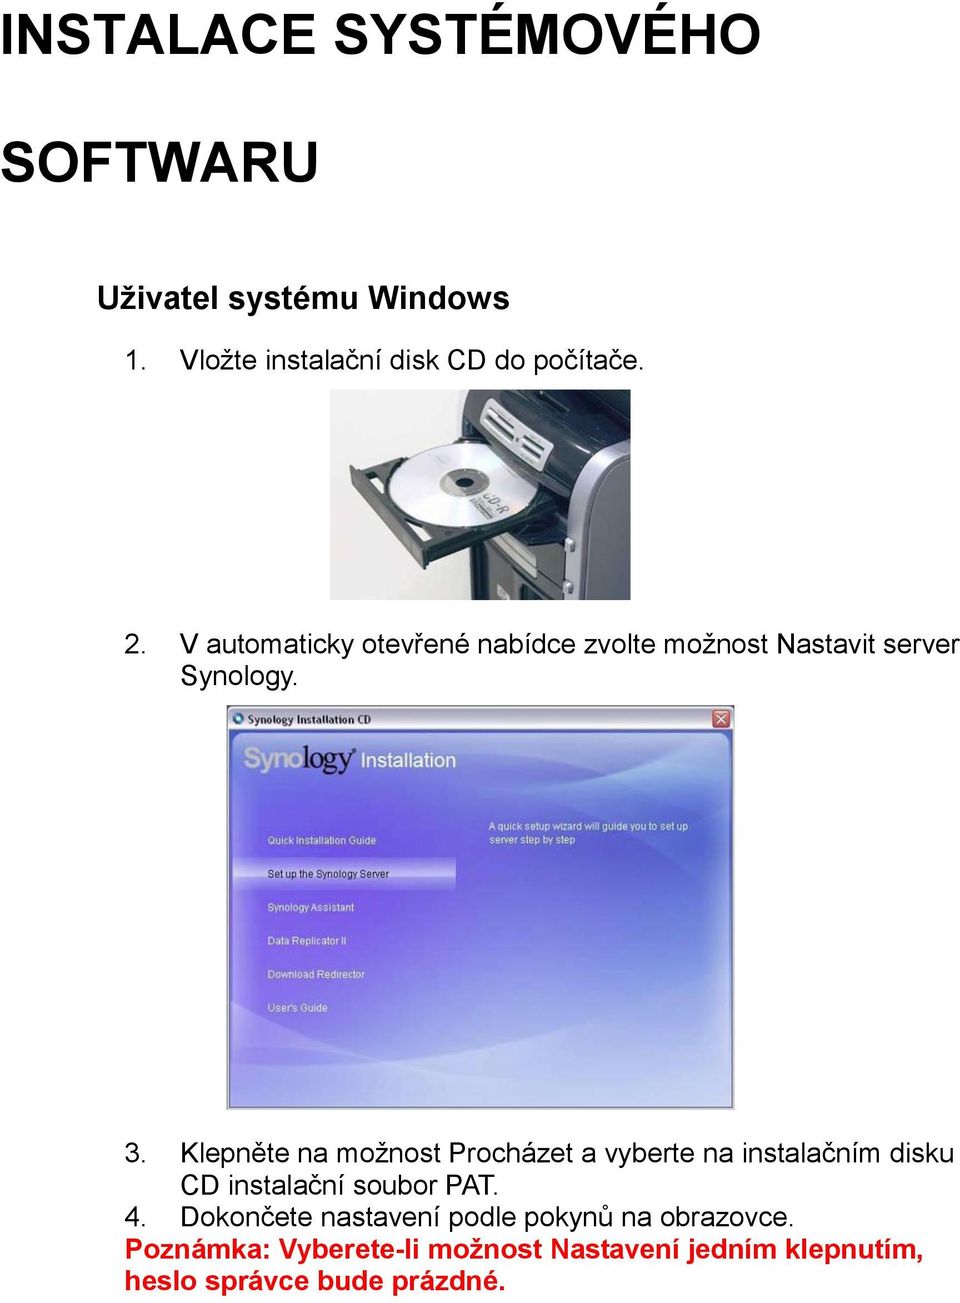 Klepněte na možnost Procházet a vyberte na instalačním disku CD instalační soubor PAT. 4.